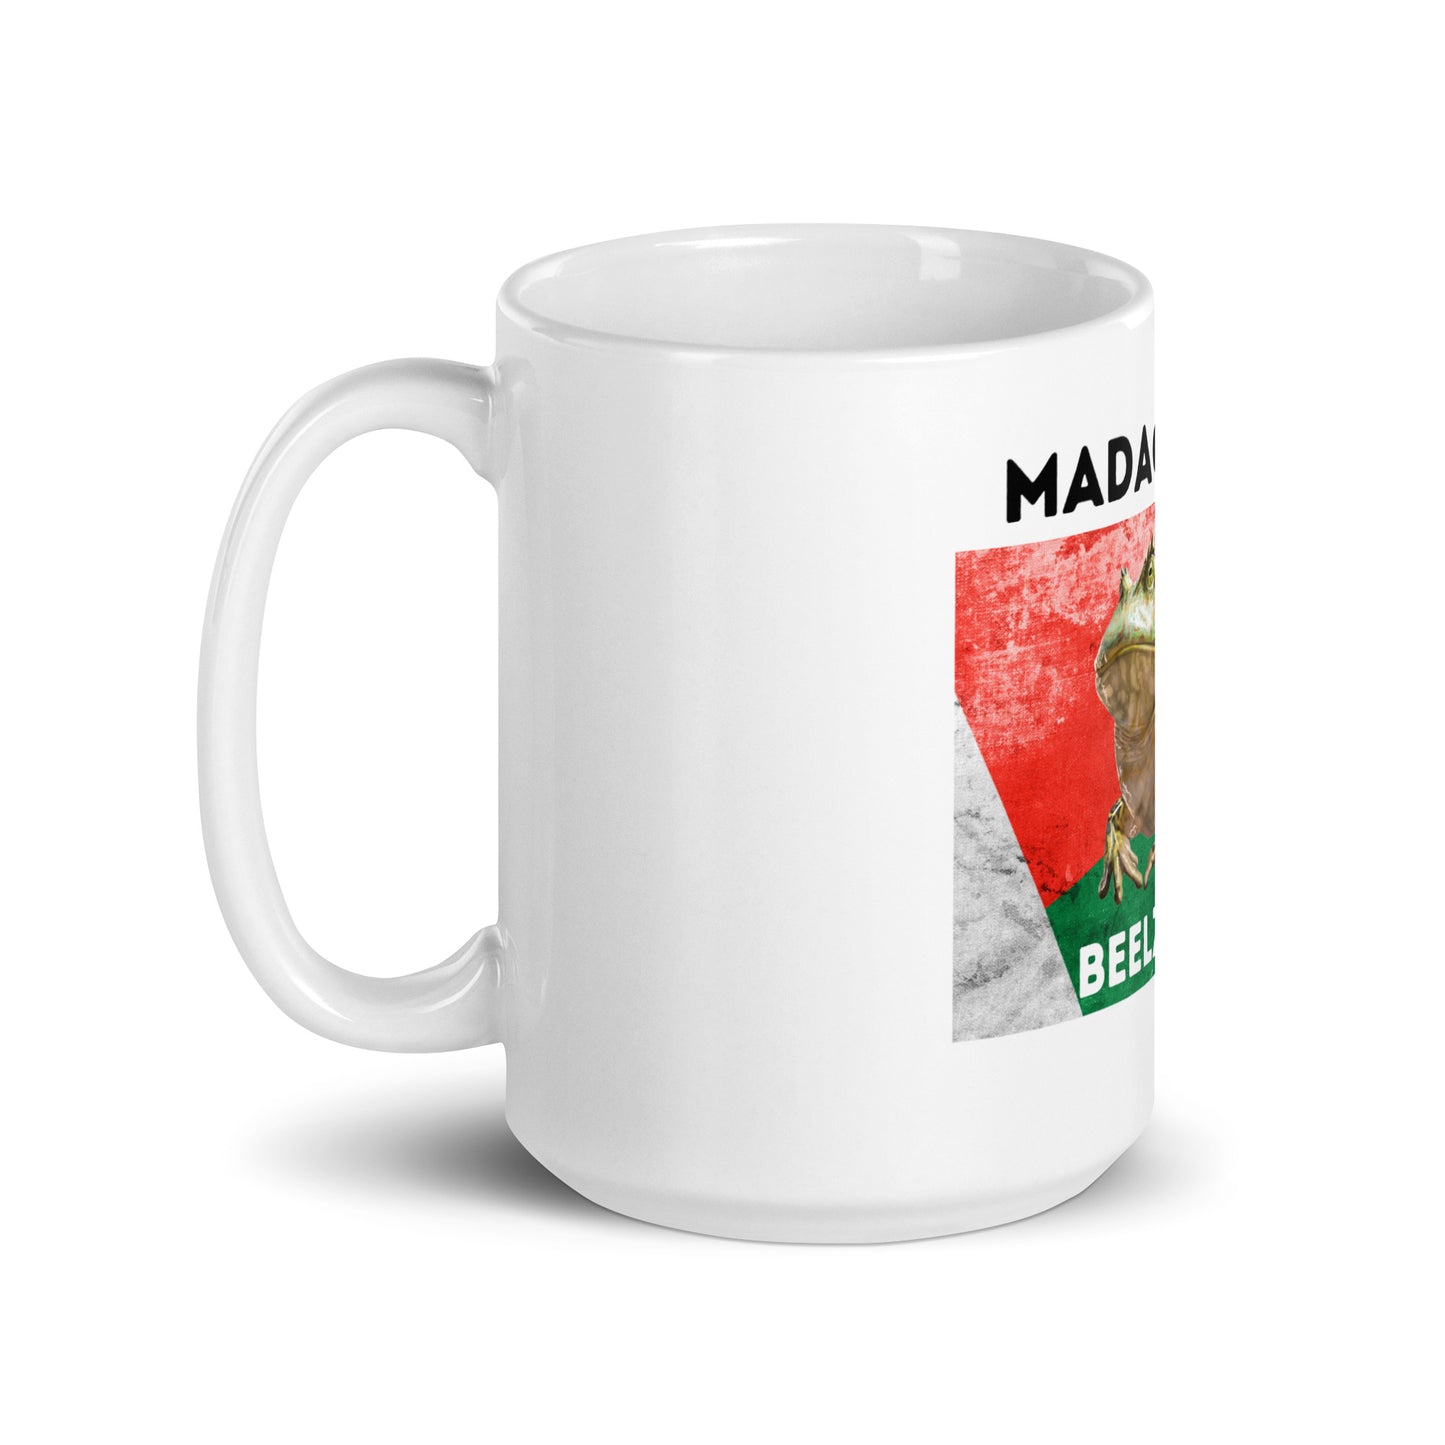 Madagascar Beelzebufo Glossy Mug